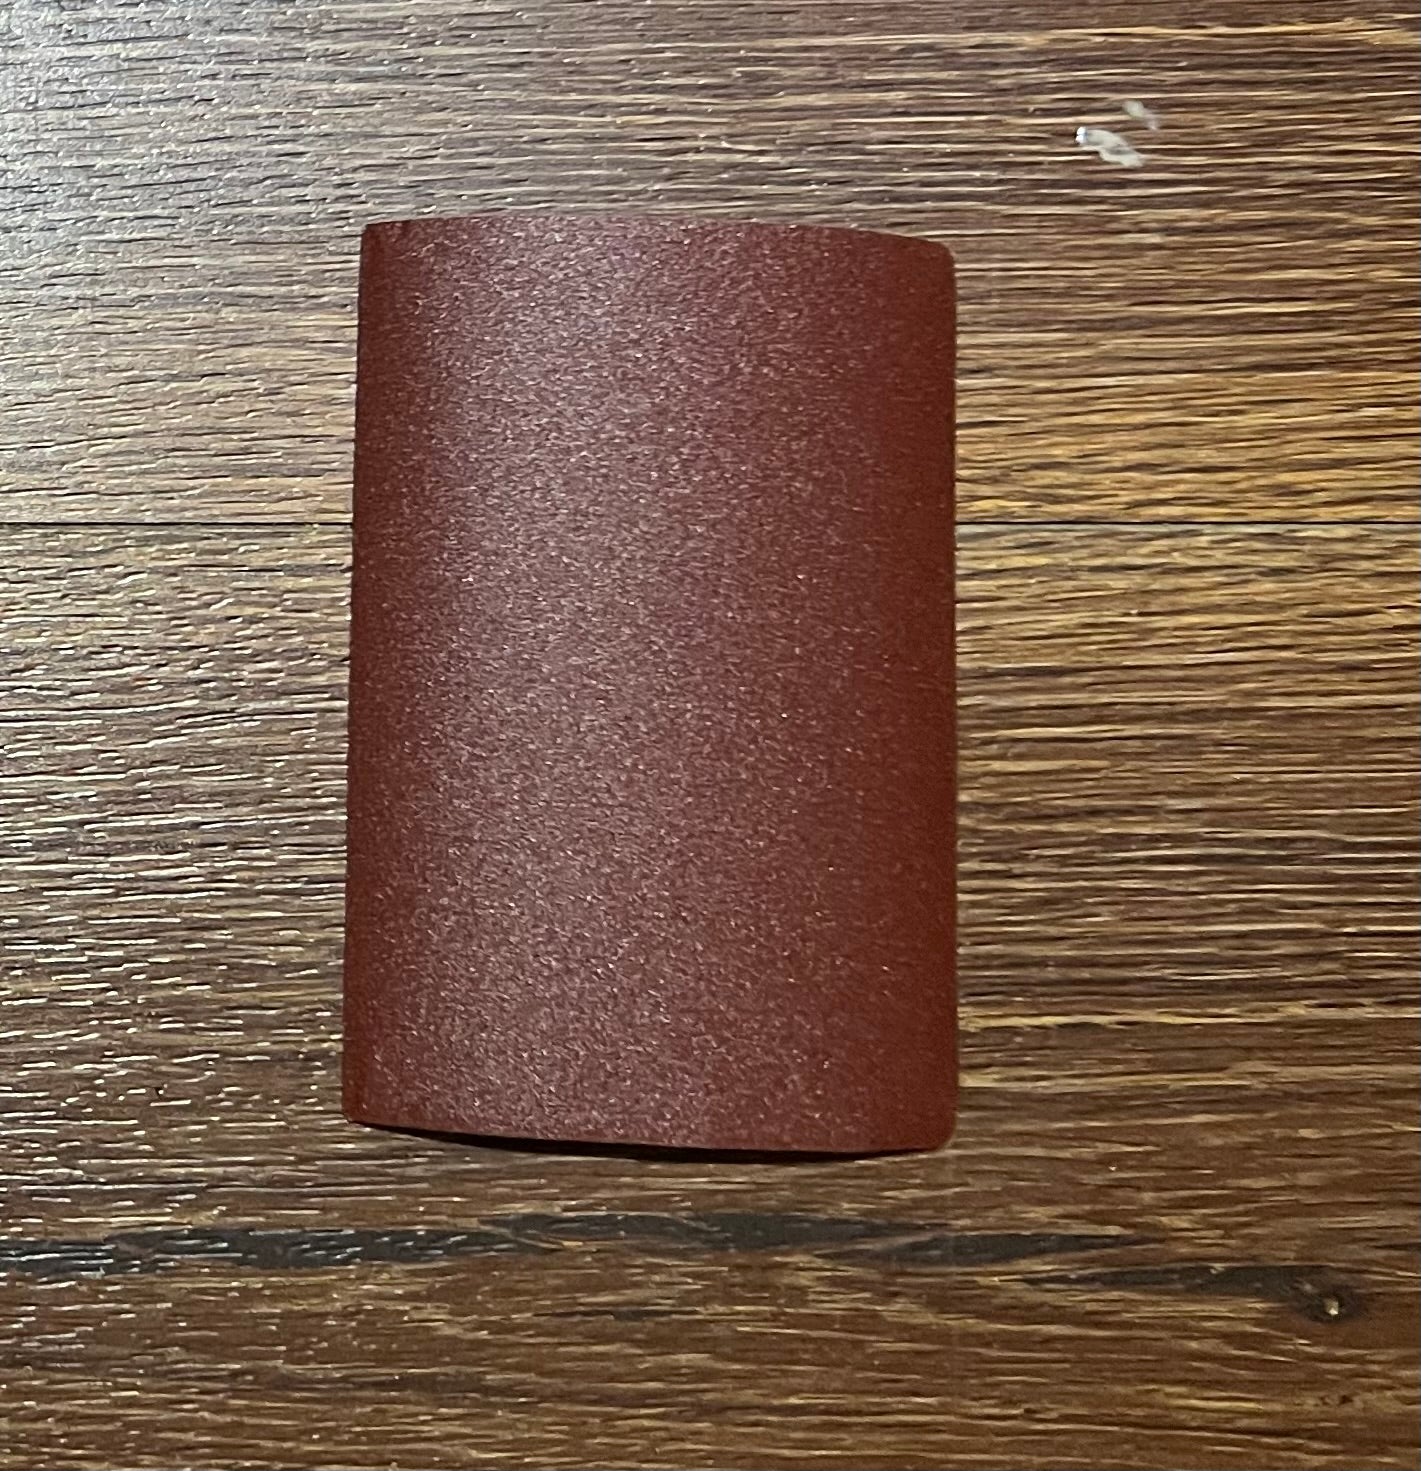 PrepMate 1 Sandpaper (70mm x 100mm)